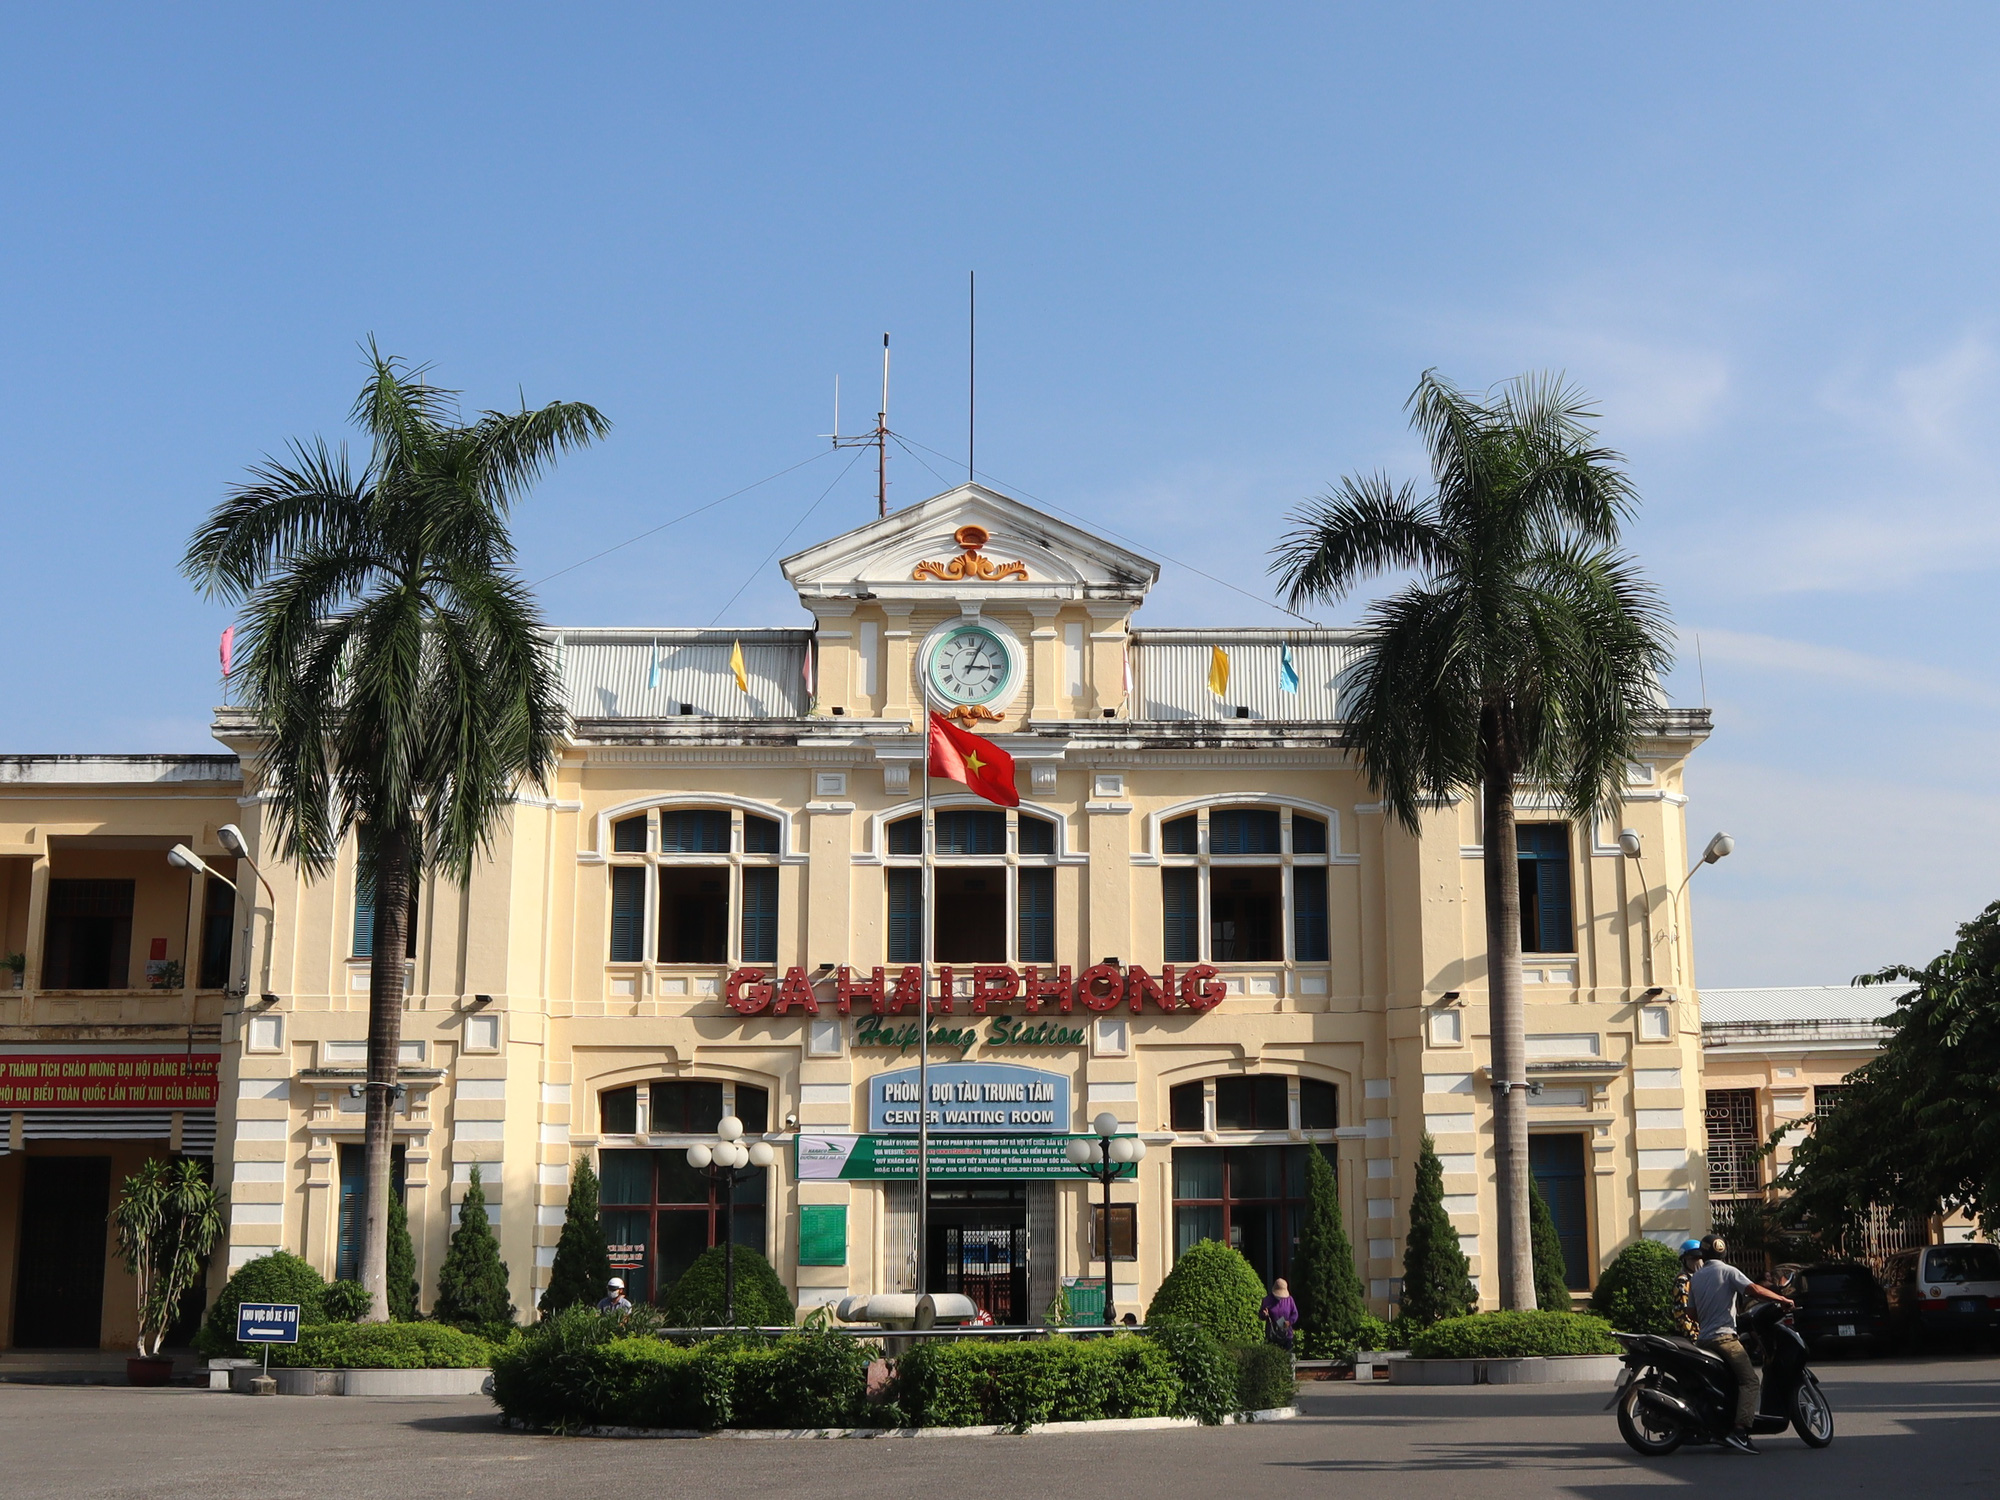 Đường sắt Hà Nội-Hải Phòng là tuyến đường sắt mới nhất và hiện đại nhất miền Bắc Việt Nam. Hãy xem hình để cảm nhận sự tiện nghi và phong cách hiện đại của tuyến đường sắt này.